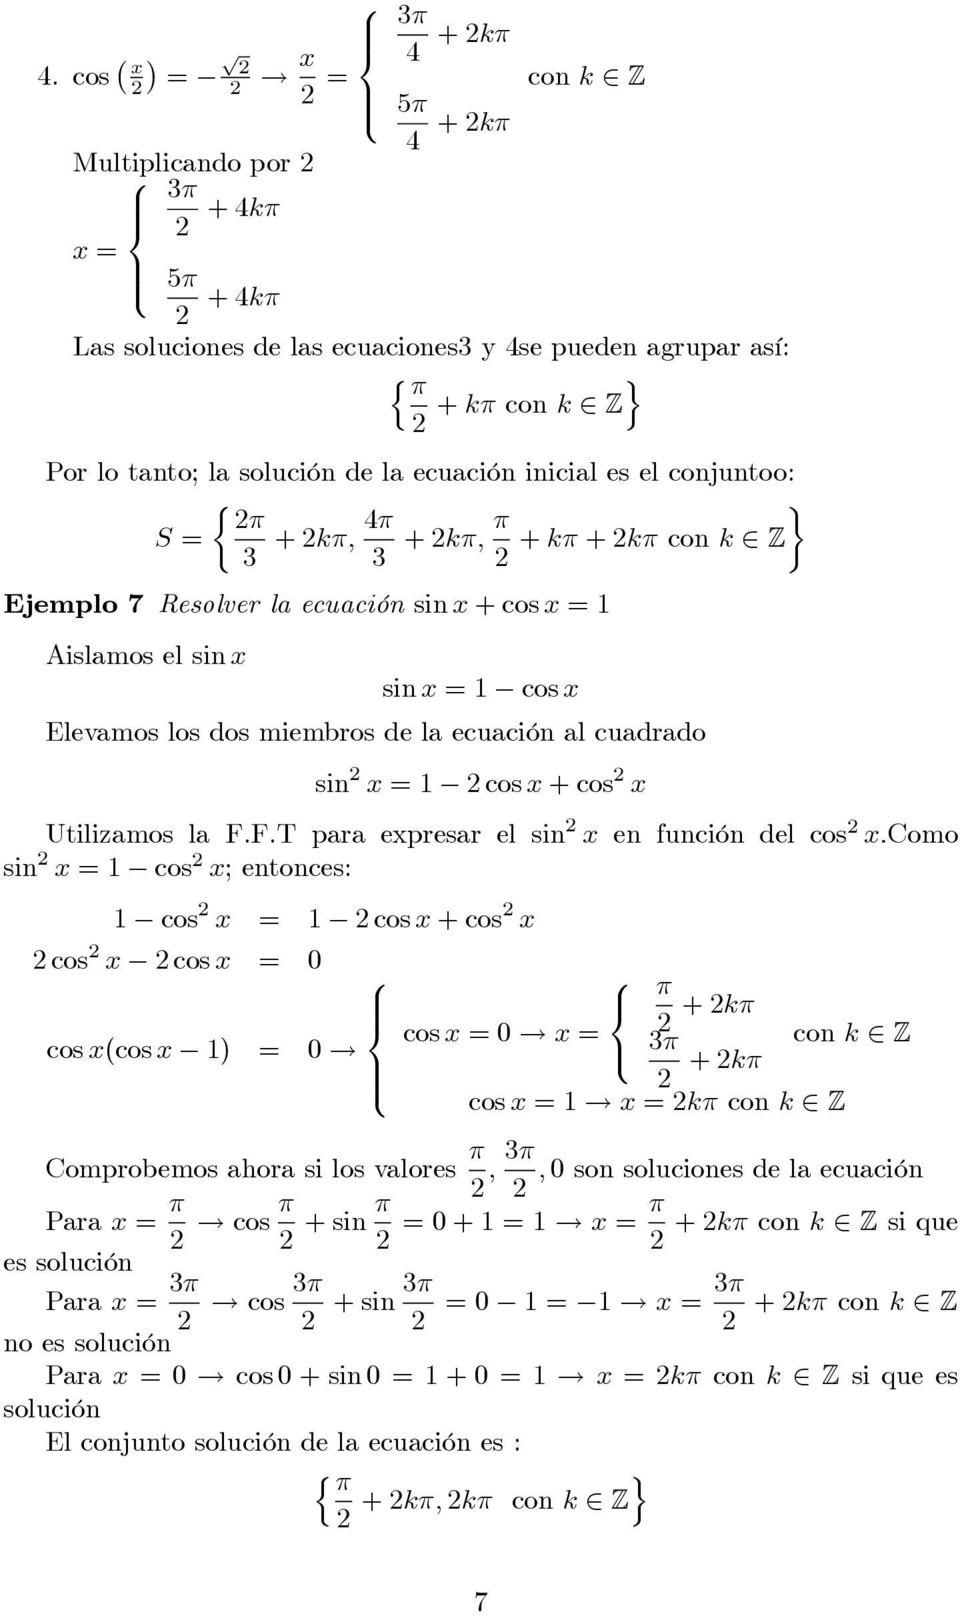 + k + k con k Z Ejemlo 7 Resolver la ecuación sin x + cos x = Aislamos el sin x sin x = cos x Elevamos los dos miembros de la ecuación al cuadrado sin x = cos x + cos x Utilizamos la F.